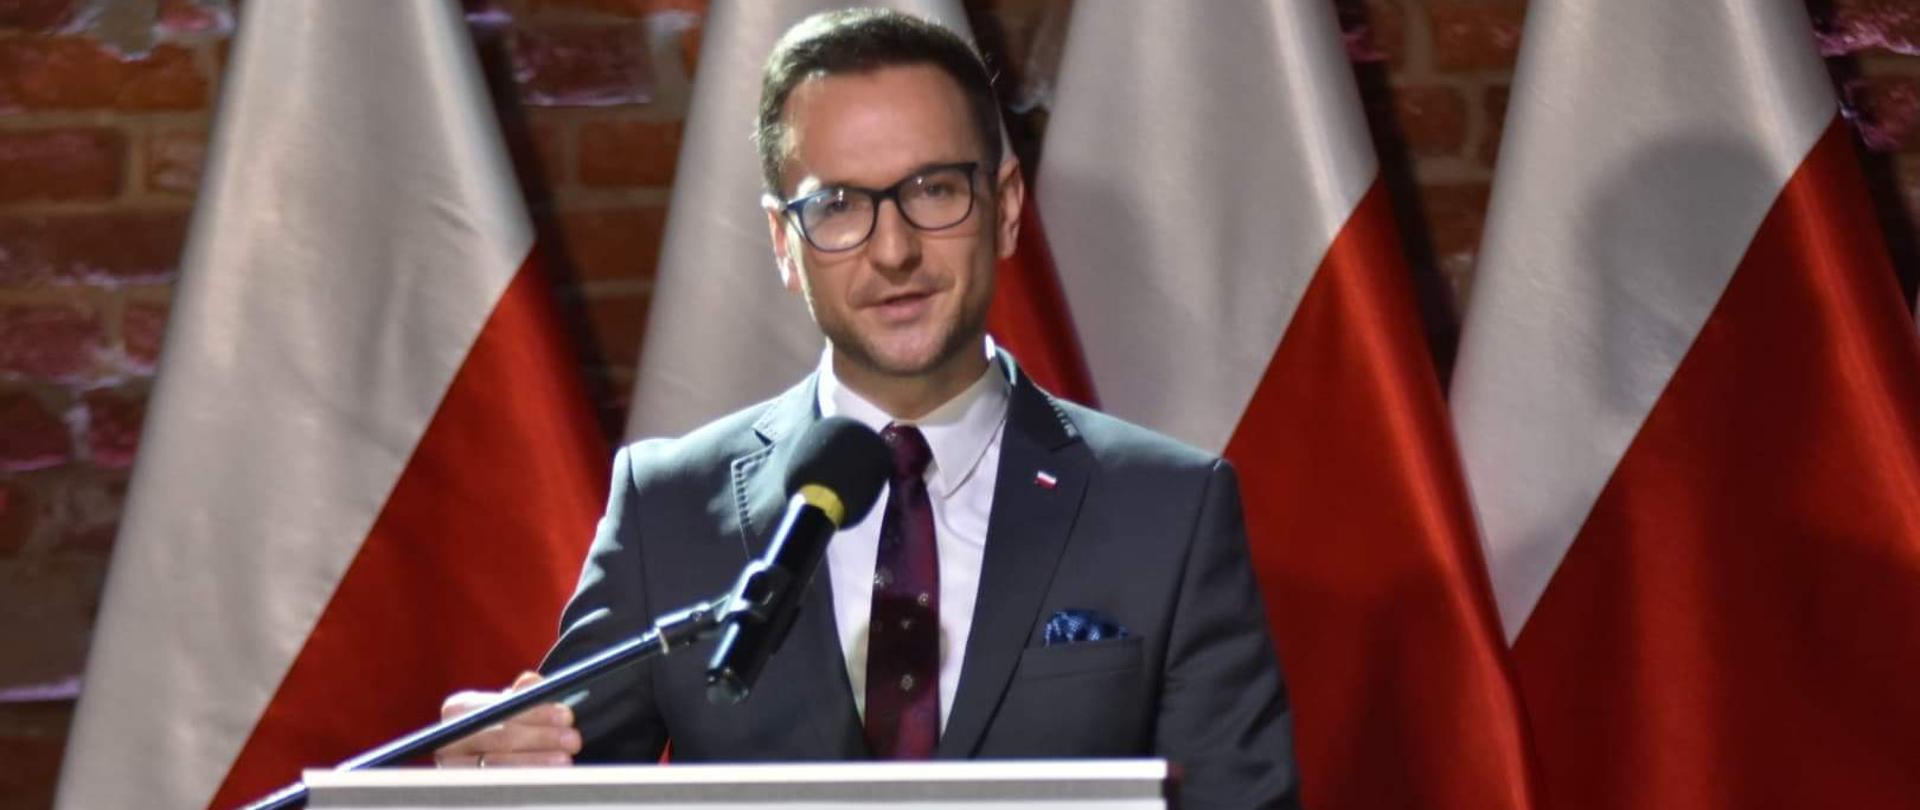 Na zdjęciu wiceminister Waldemar Buda stoi przy mównicy, w tle cztery biało-czerwone flagi.